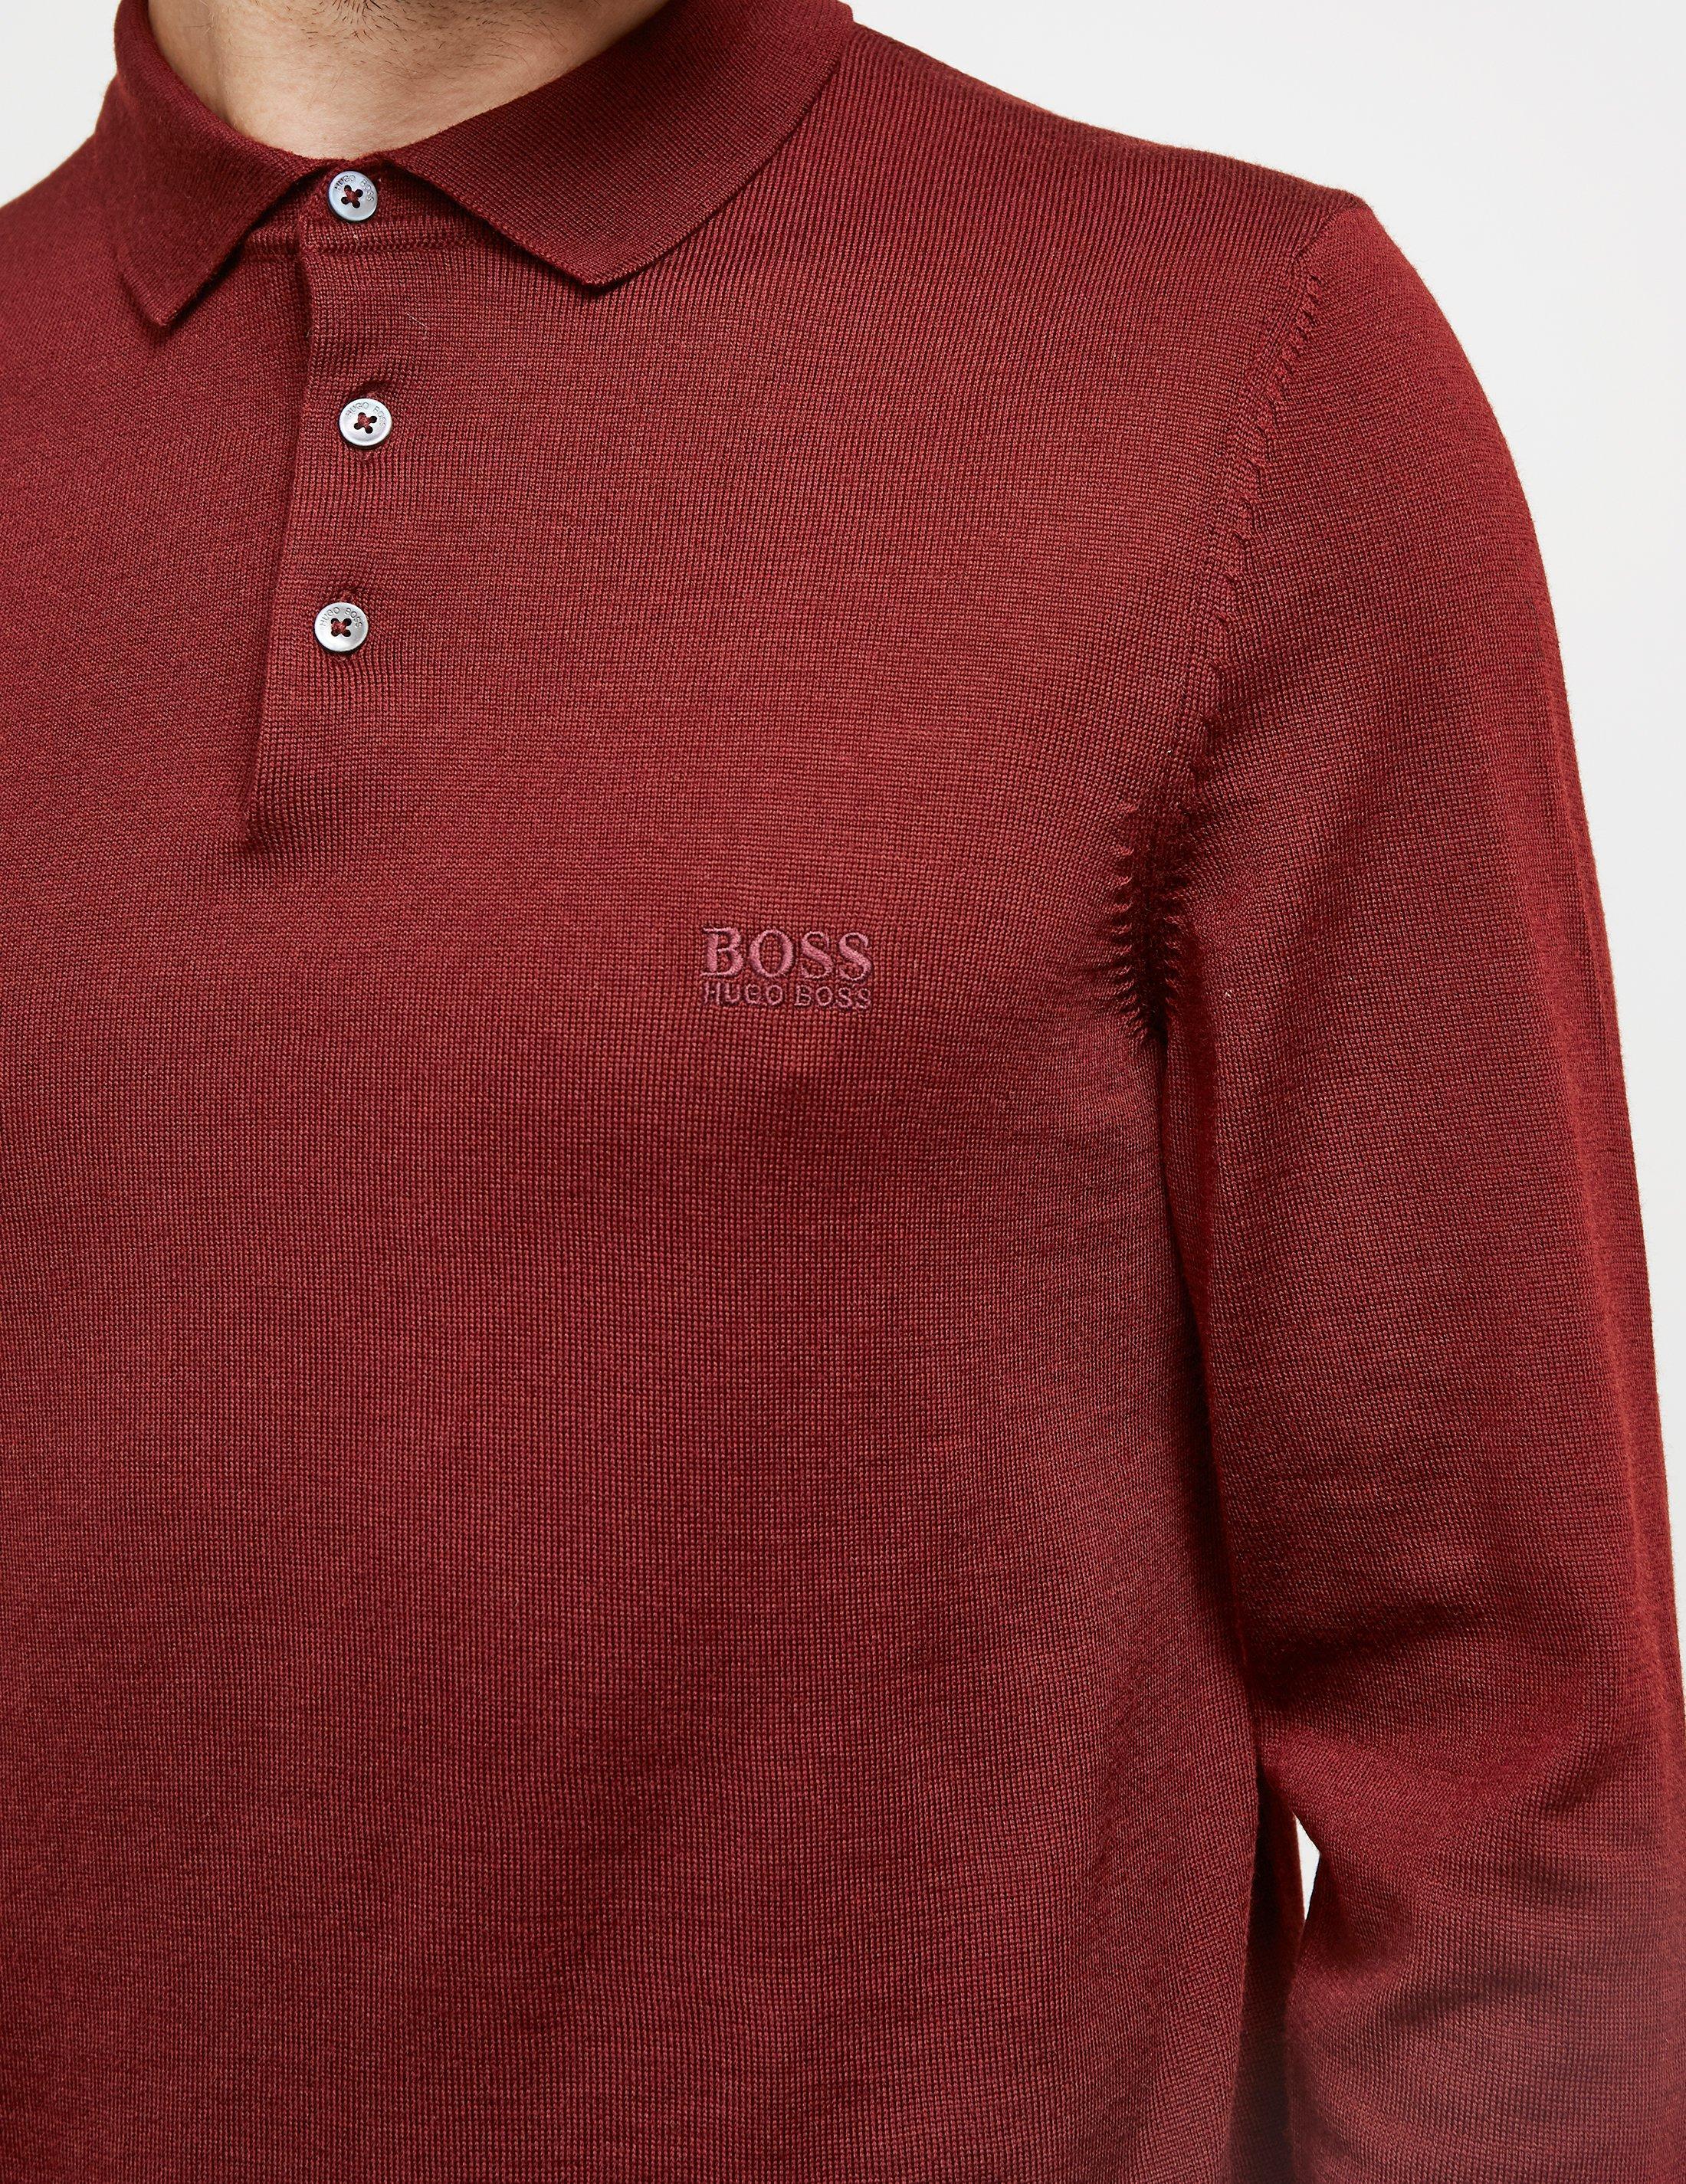 BOSS HUGO BOSS Bono Knitted Long Sleeve Polo Shirt Burgundy in Red for Men - Lyst